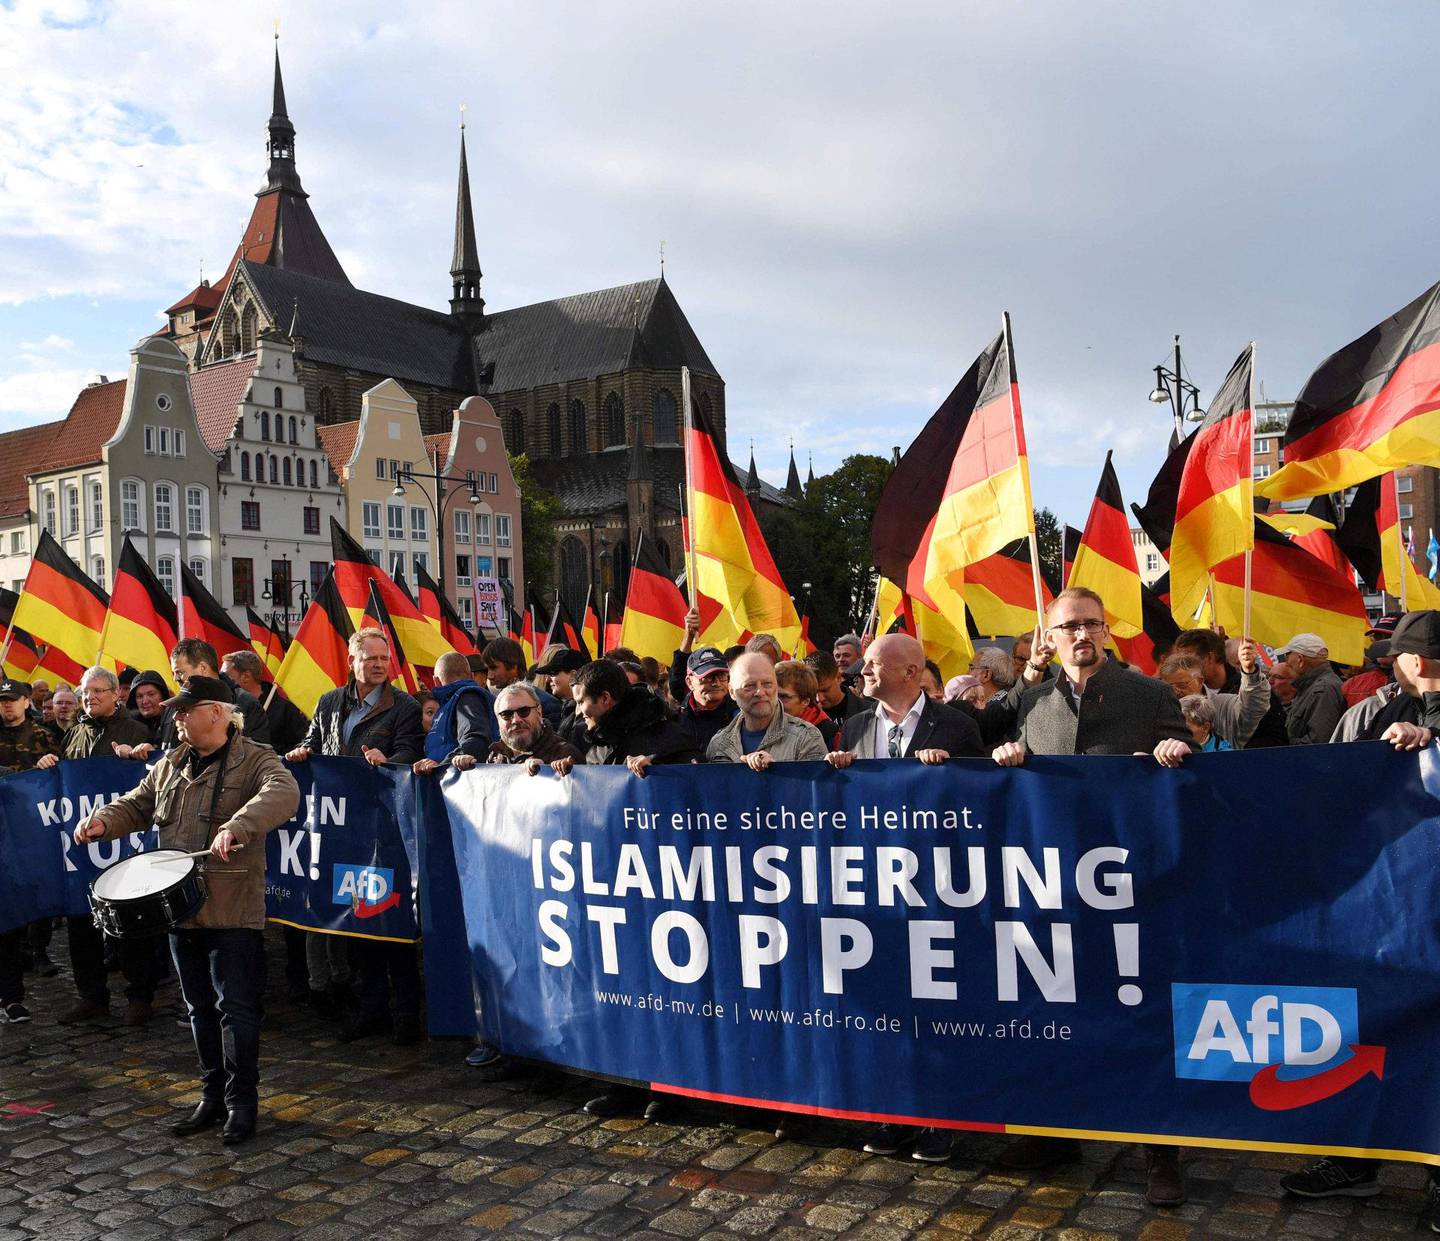 AfD: Det innvandringsfiendtlige partiet Alternativ for Tyskland har vokst kraftig de siste to årene. I september arrangerte de en demonstrasjon mot «islamisering» i byen Rostock øst i Tyskland. FOTO: NTB SCANPIX